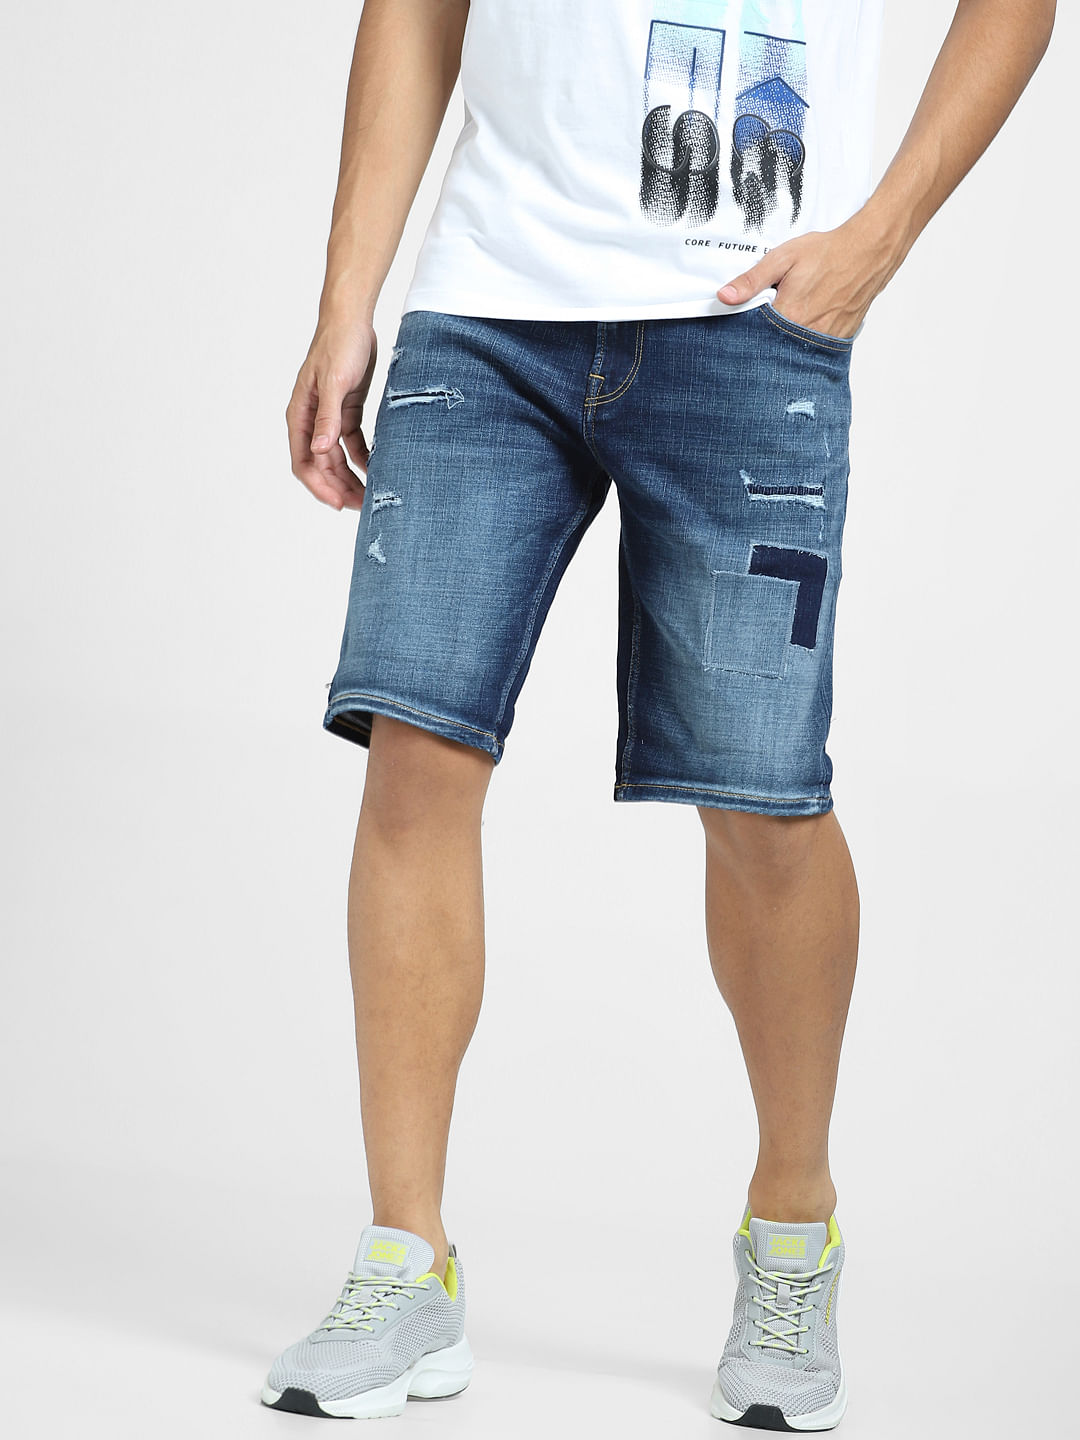 CELINE HOMME Straight-Leg Studded Distressed Denim Shorts for Men | MR  PORTER